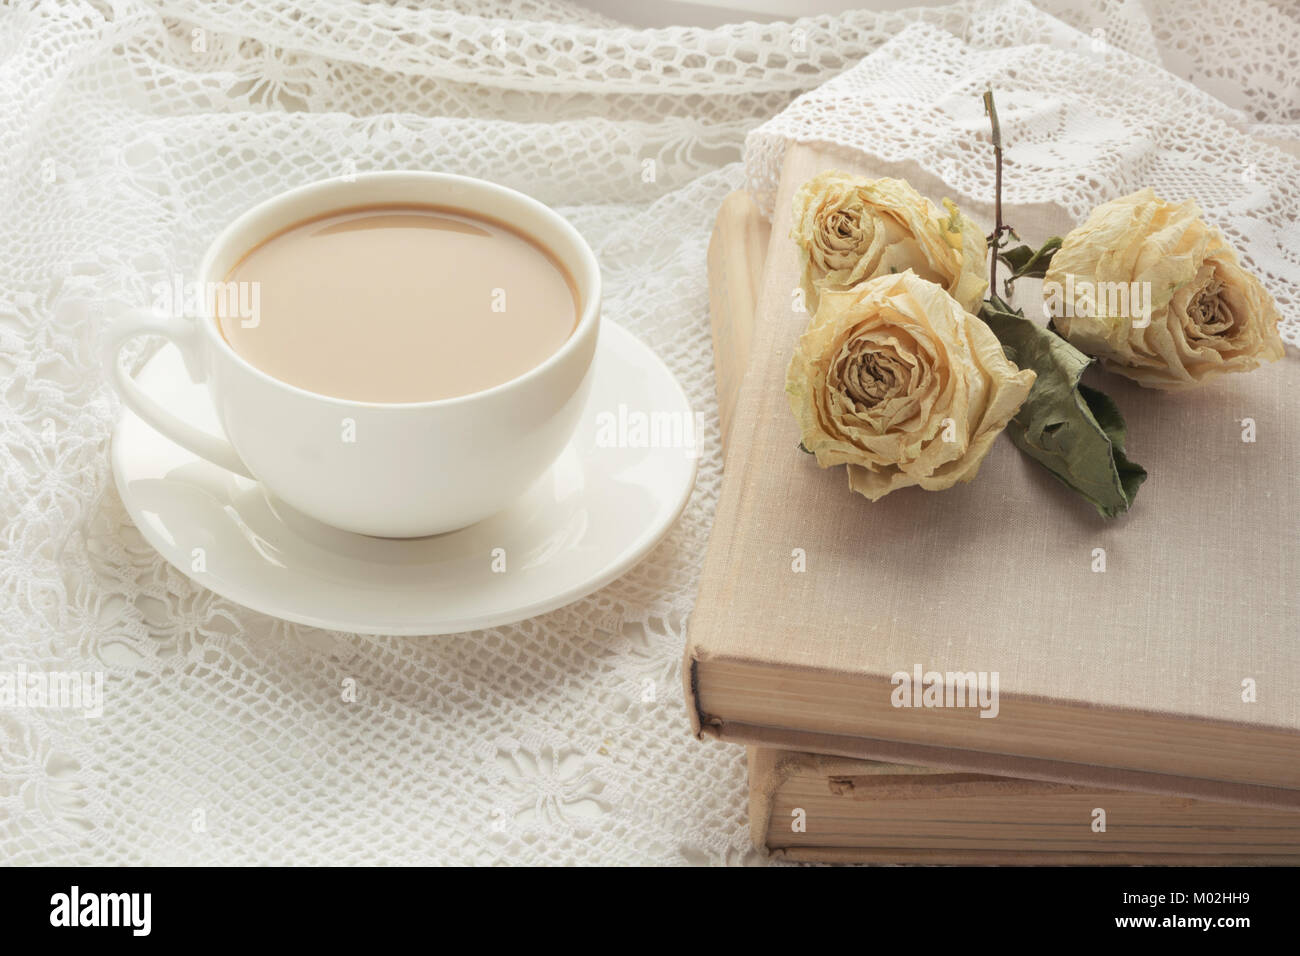 Tazza di caffè con il latte sul davanzale e prenota a secco con rose come decor sul Pizzo. Vintage. Foto Stock